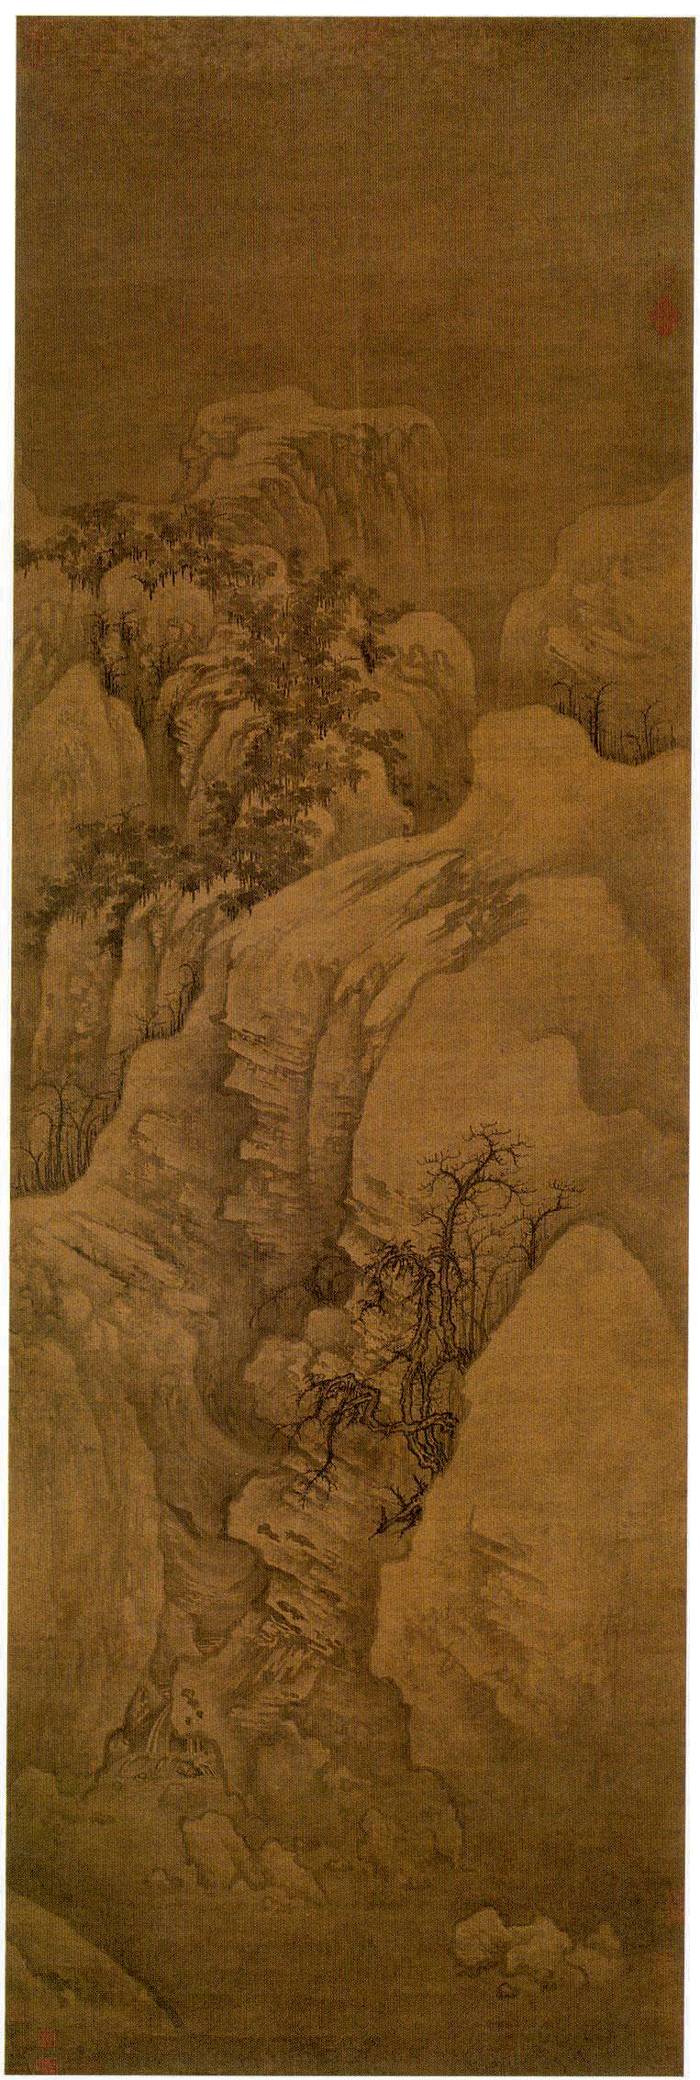 郭熙 幽谷图 167cm×53cm 绢本墨笔 北宋 现藏于上海博物馆